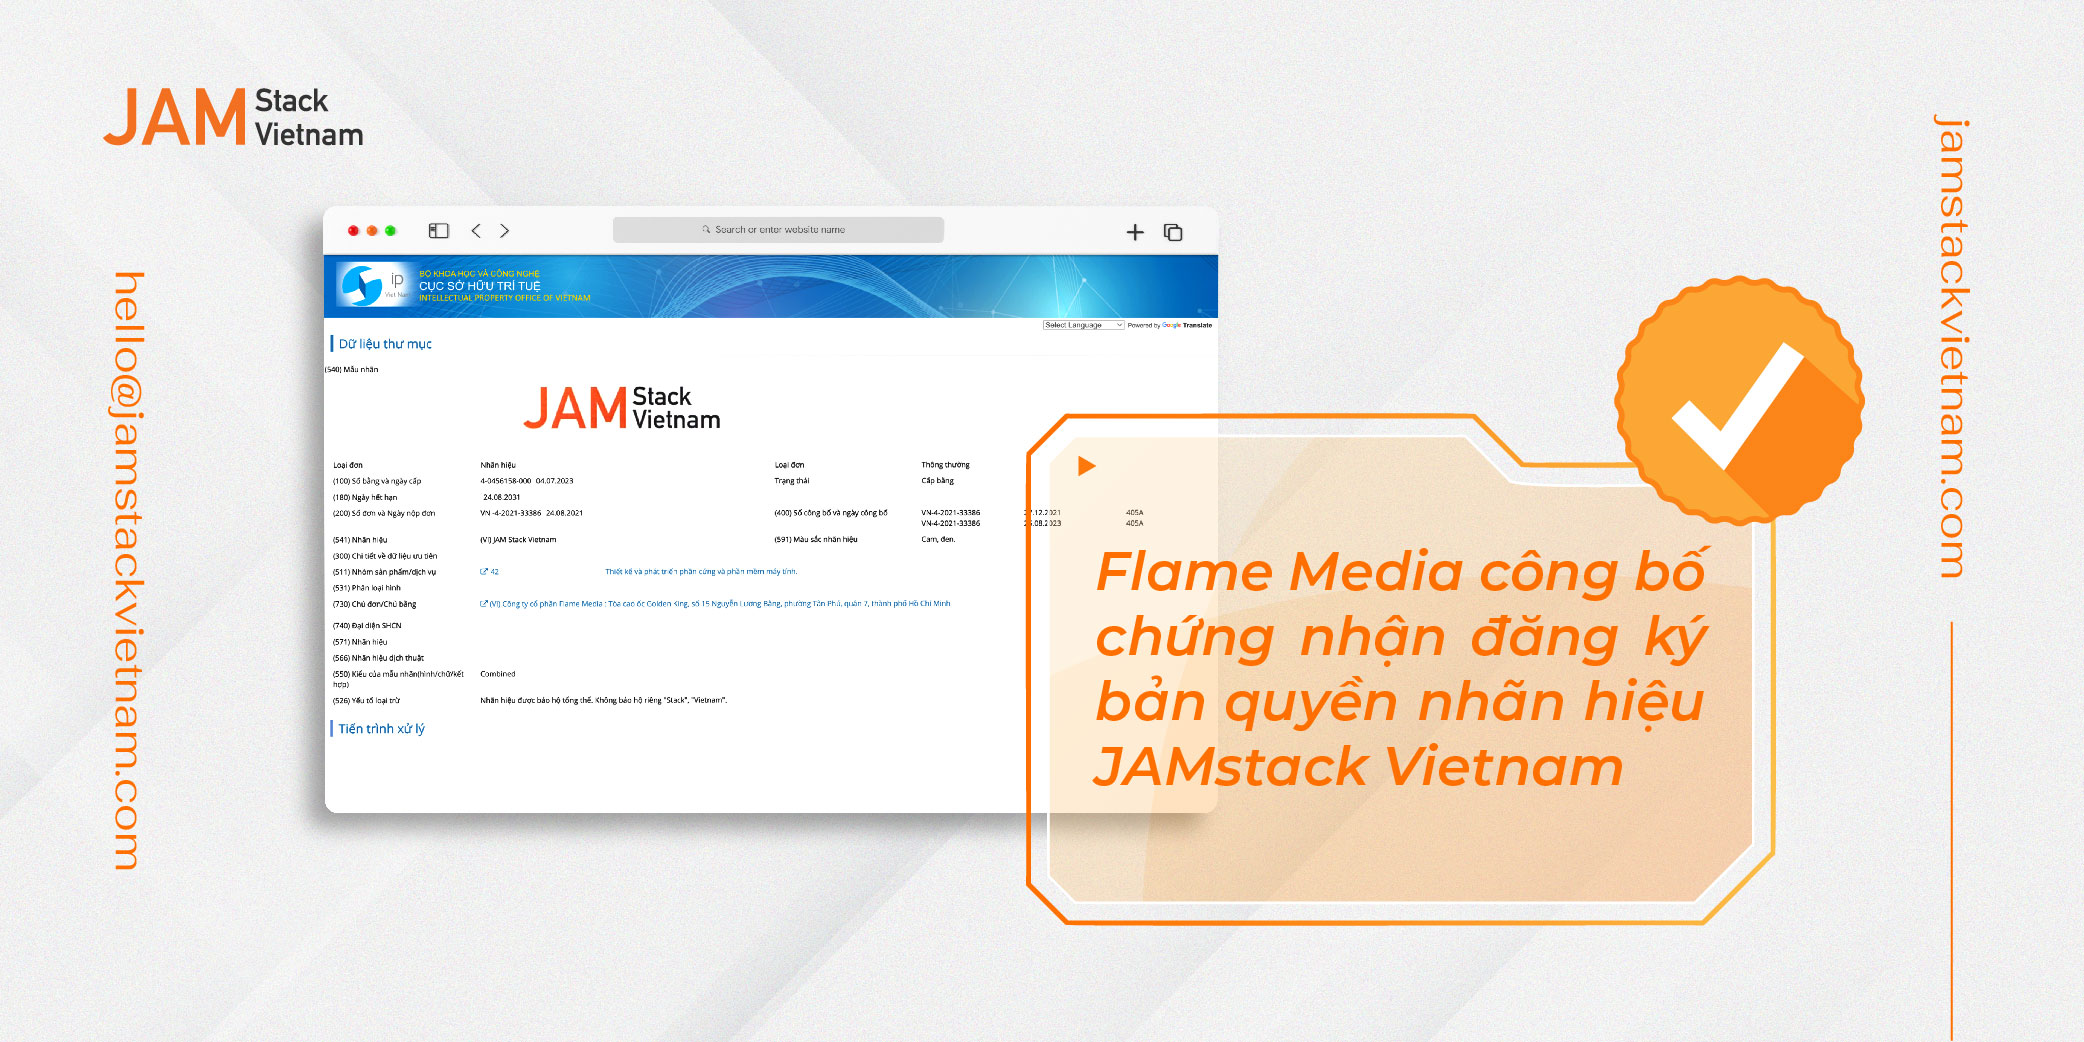 Flame Media công bố chứng nhận đăng ký bản quyền nhãn hiệu JAMstack Vietnam